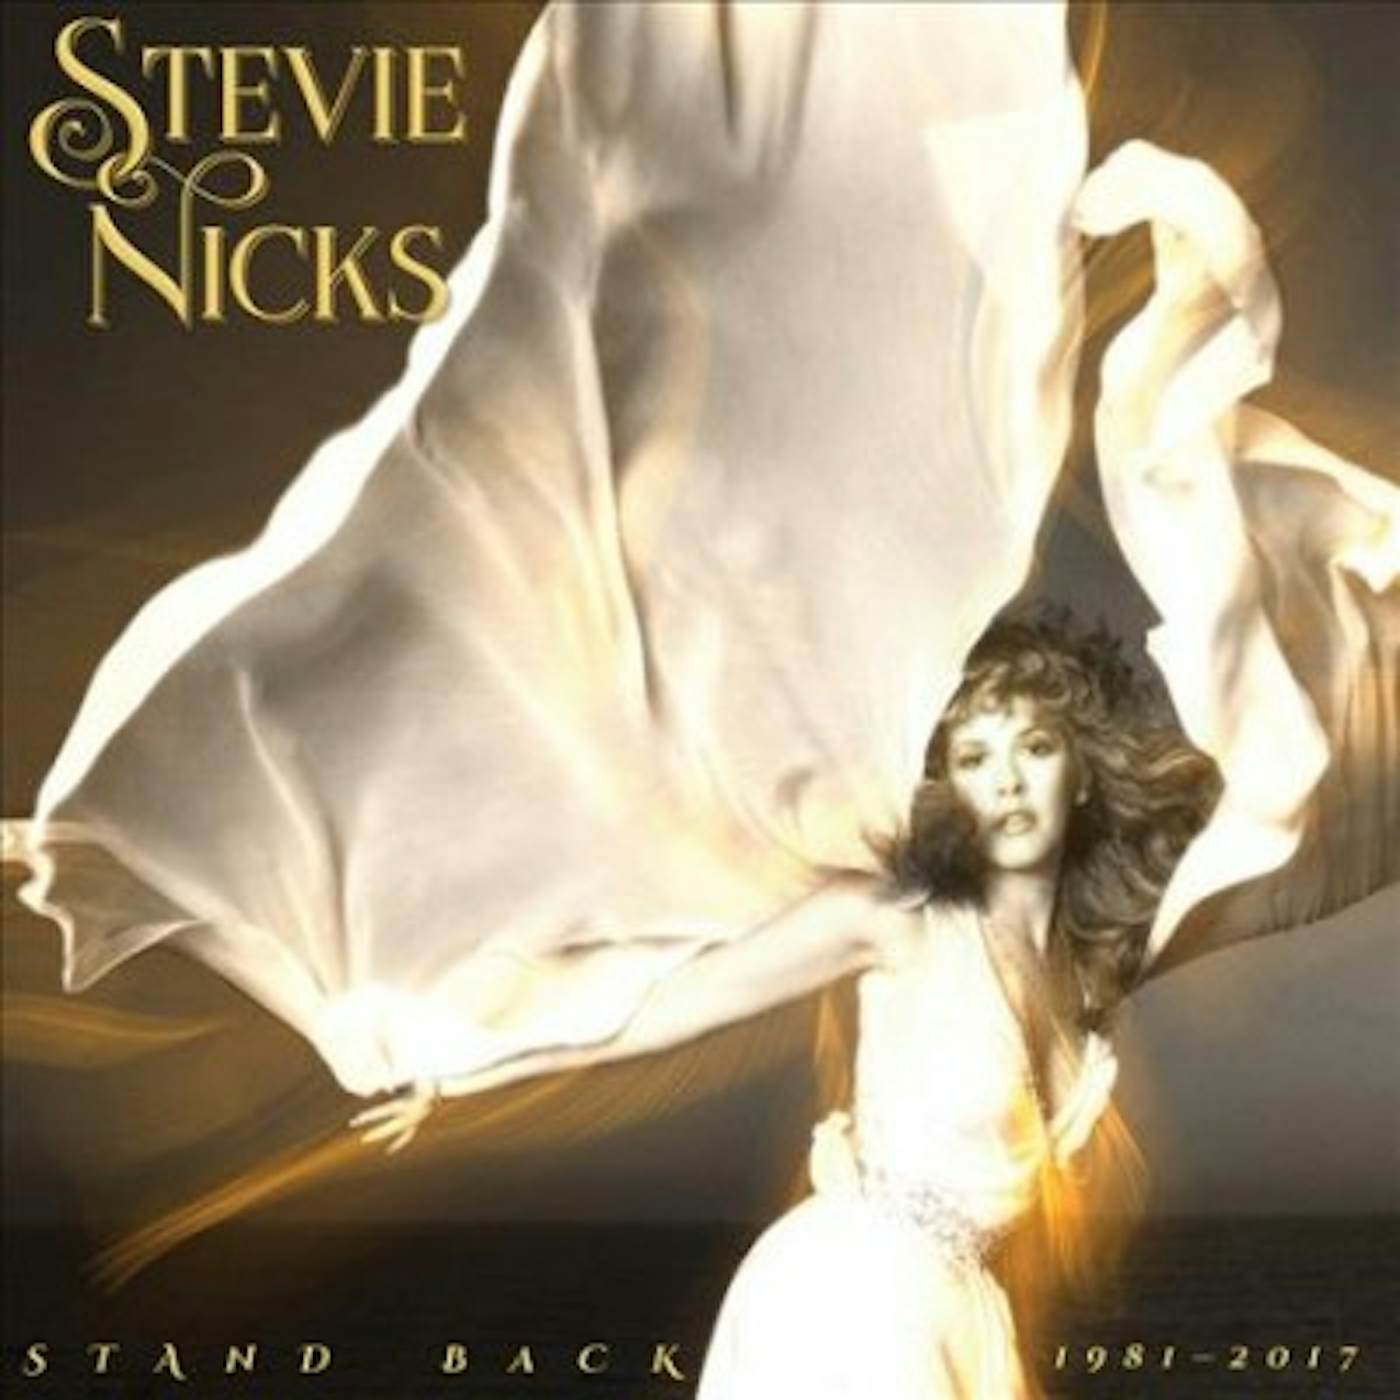 Stevie Nicks STAND BACK: 1981-2017 (3CD) CD